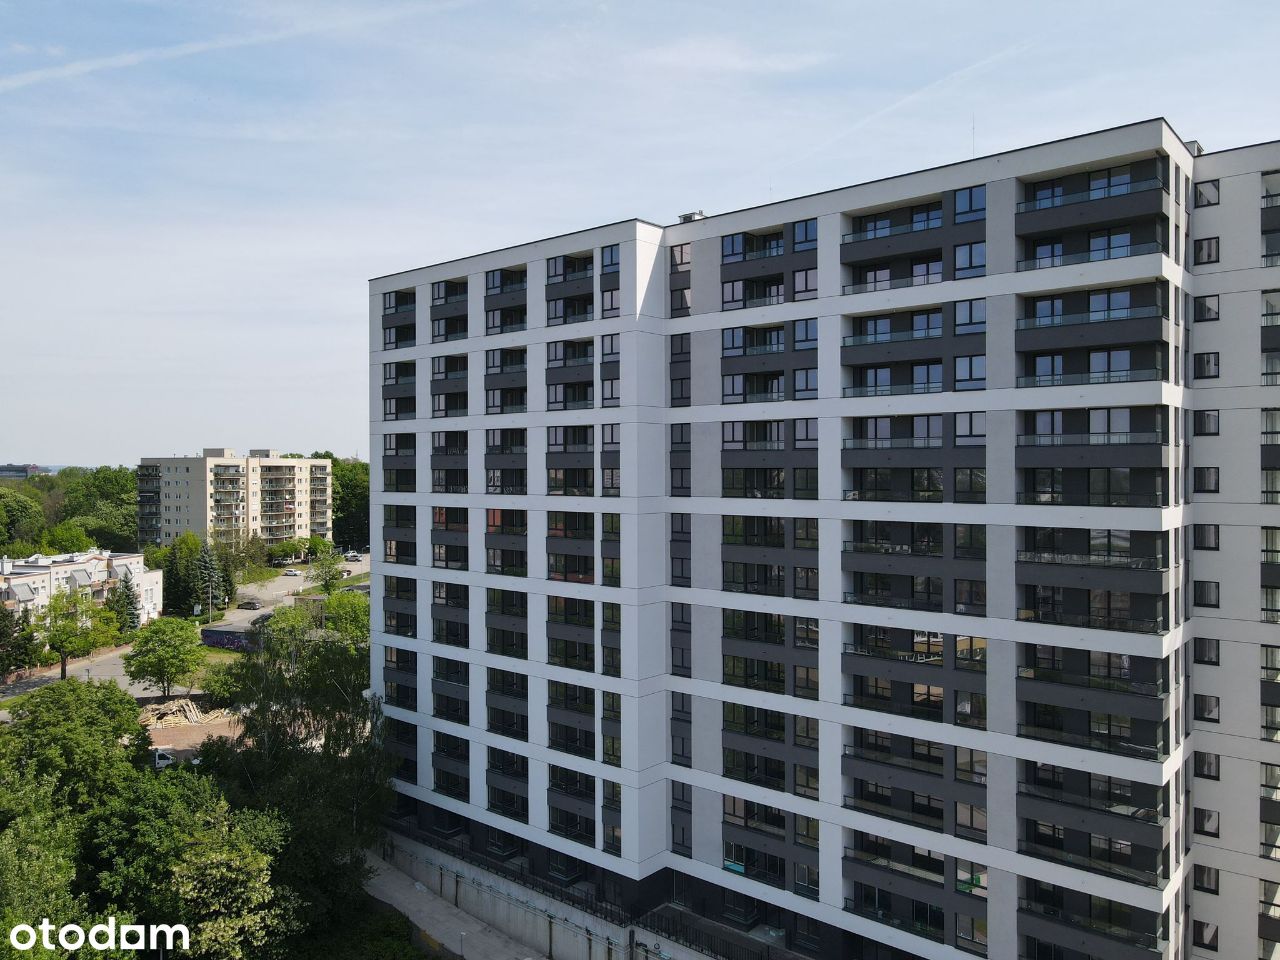 Apartament 41m2, 2 pokoje, Bez Prowizji, 0% PCC